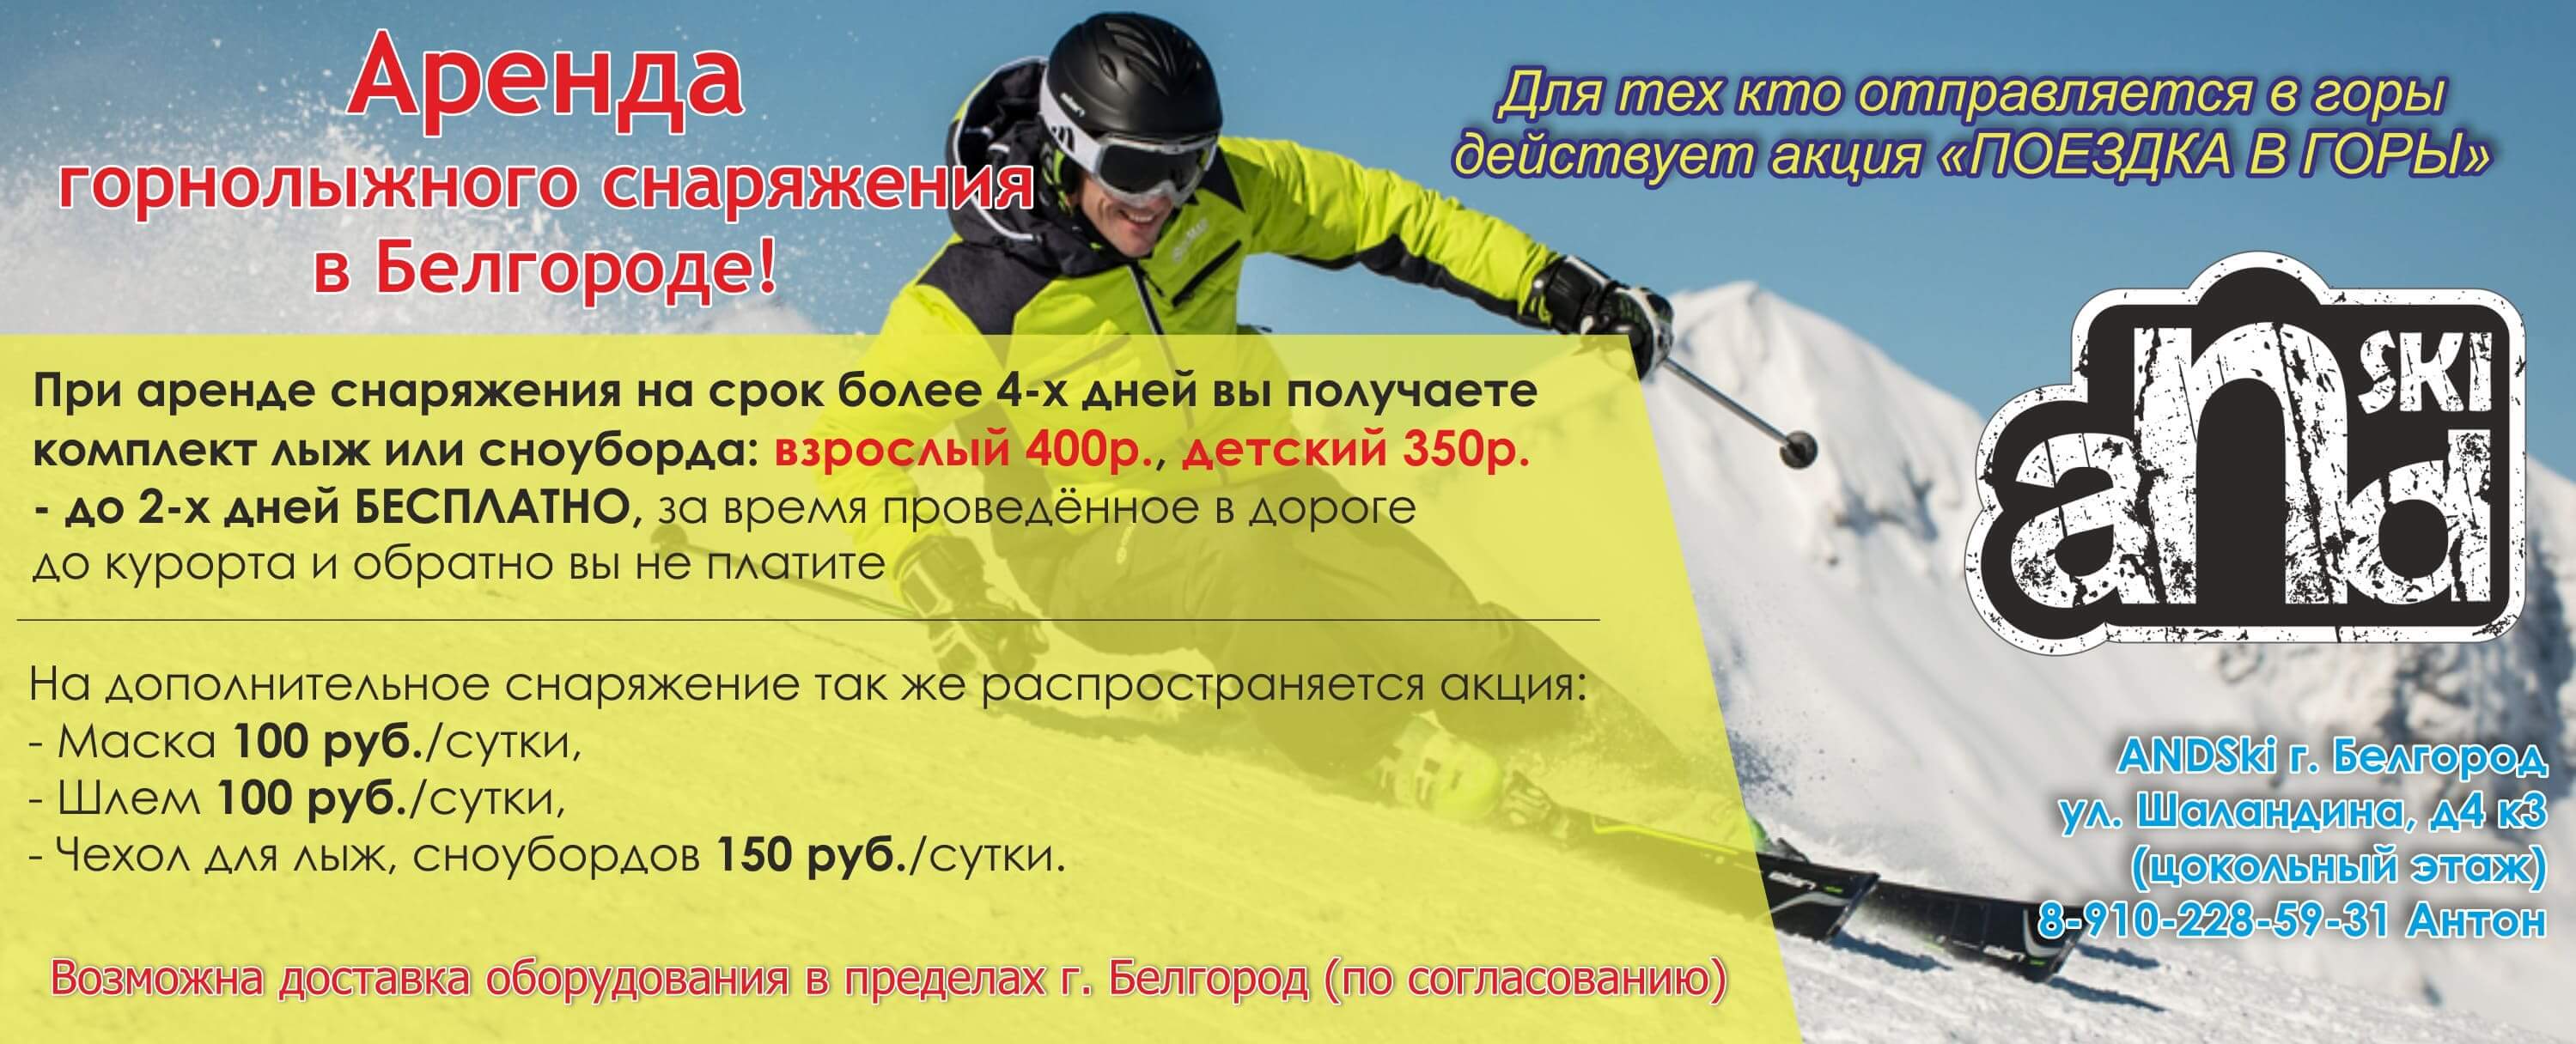 Аренда горнолыжного оборудования в Белгороде